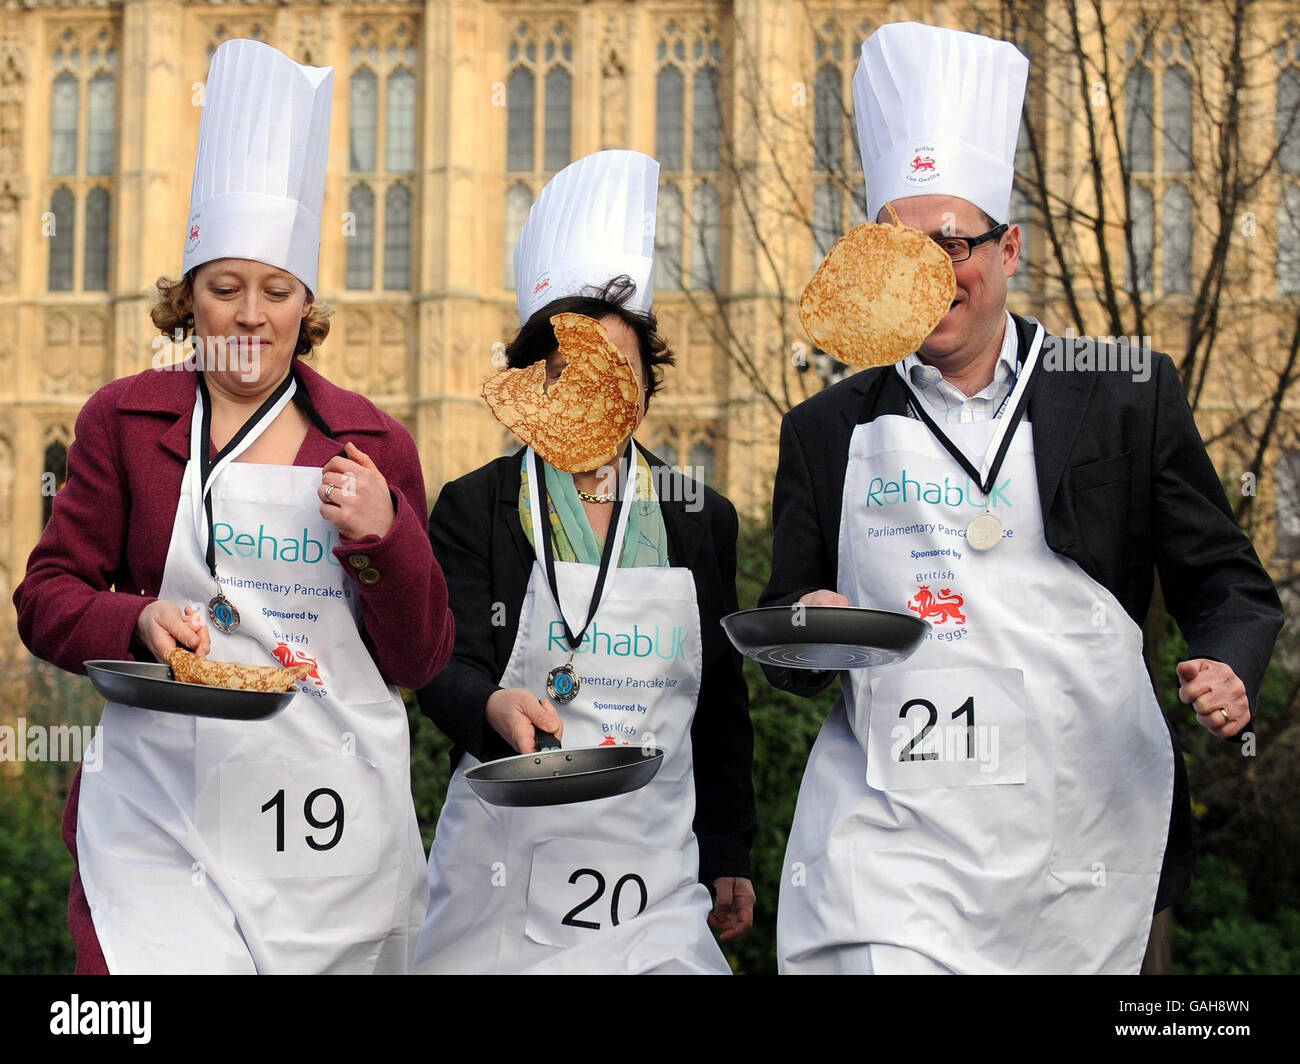 Drei der Gewinner des Medienteams beim Parliamentary Pancake Race, von links, Cathy Newman von Channel 4 News, Libby Wiener von ITN News und Nick Robinson von BBC News vor den Houses of Parliament, London. Stockfoto